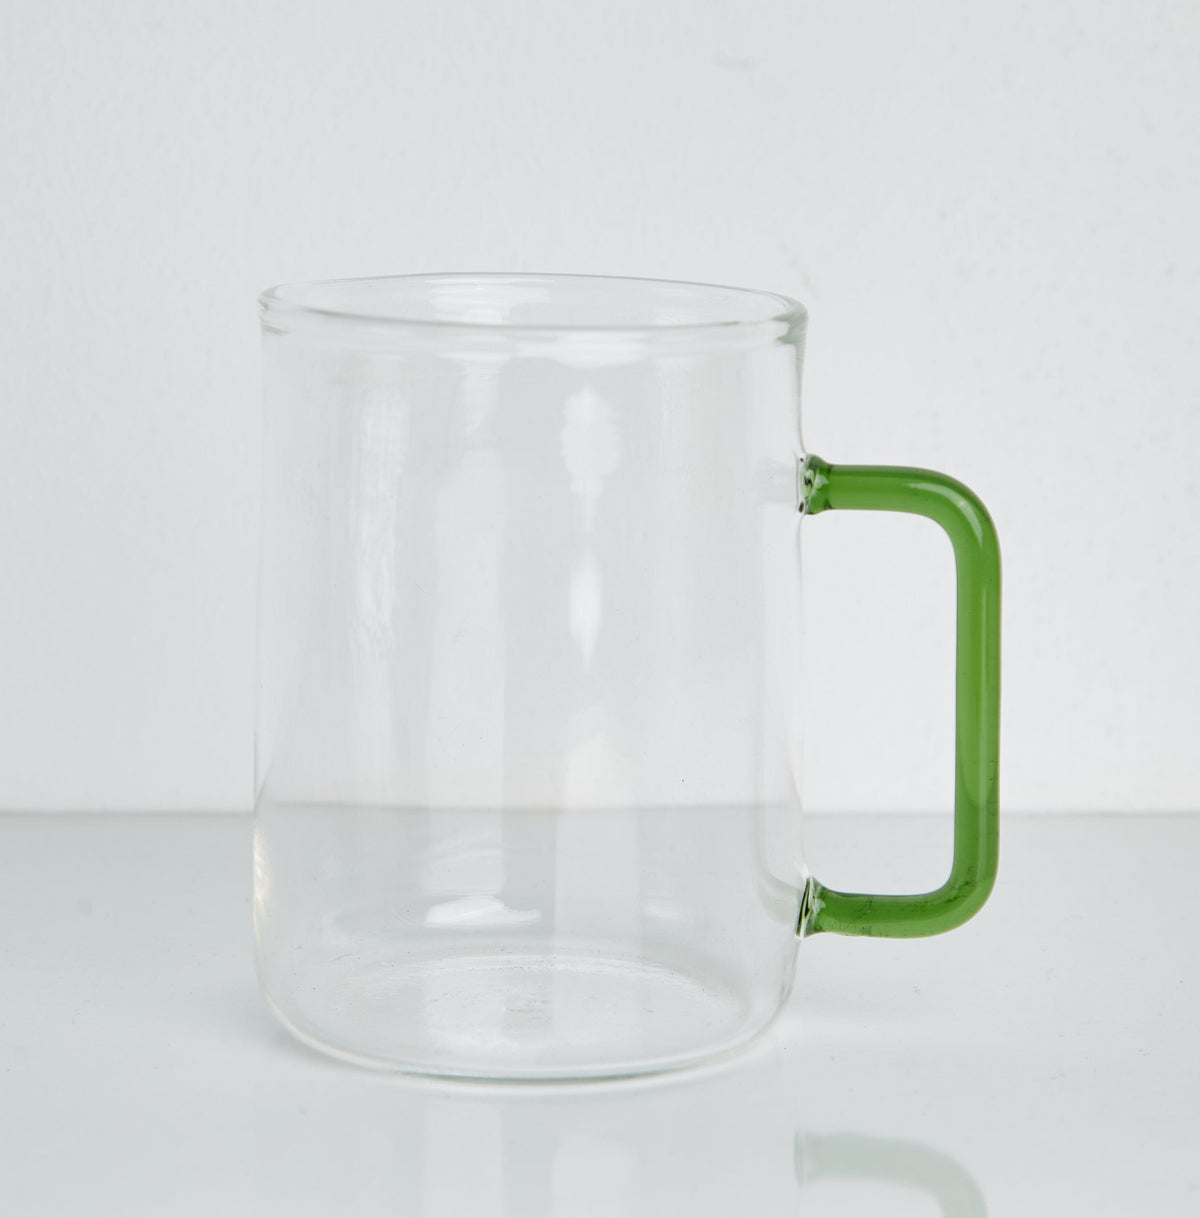 Green "Handle" - Glass Mug